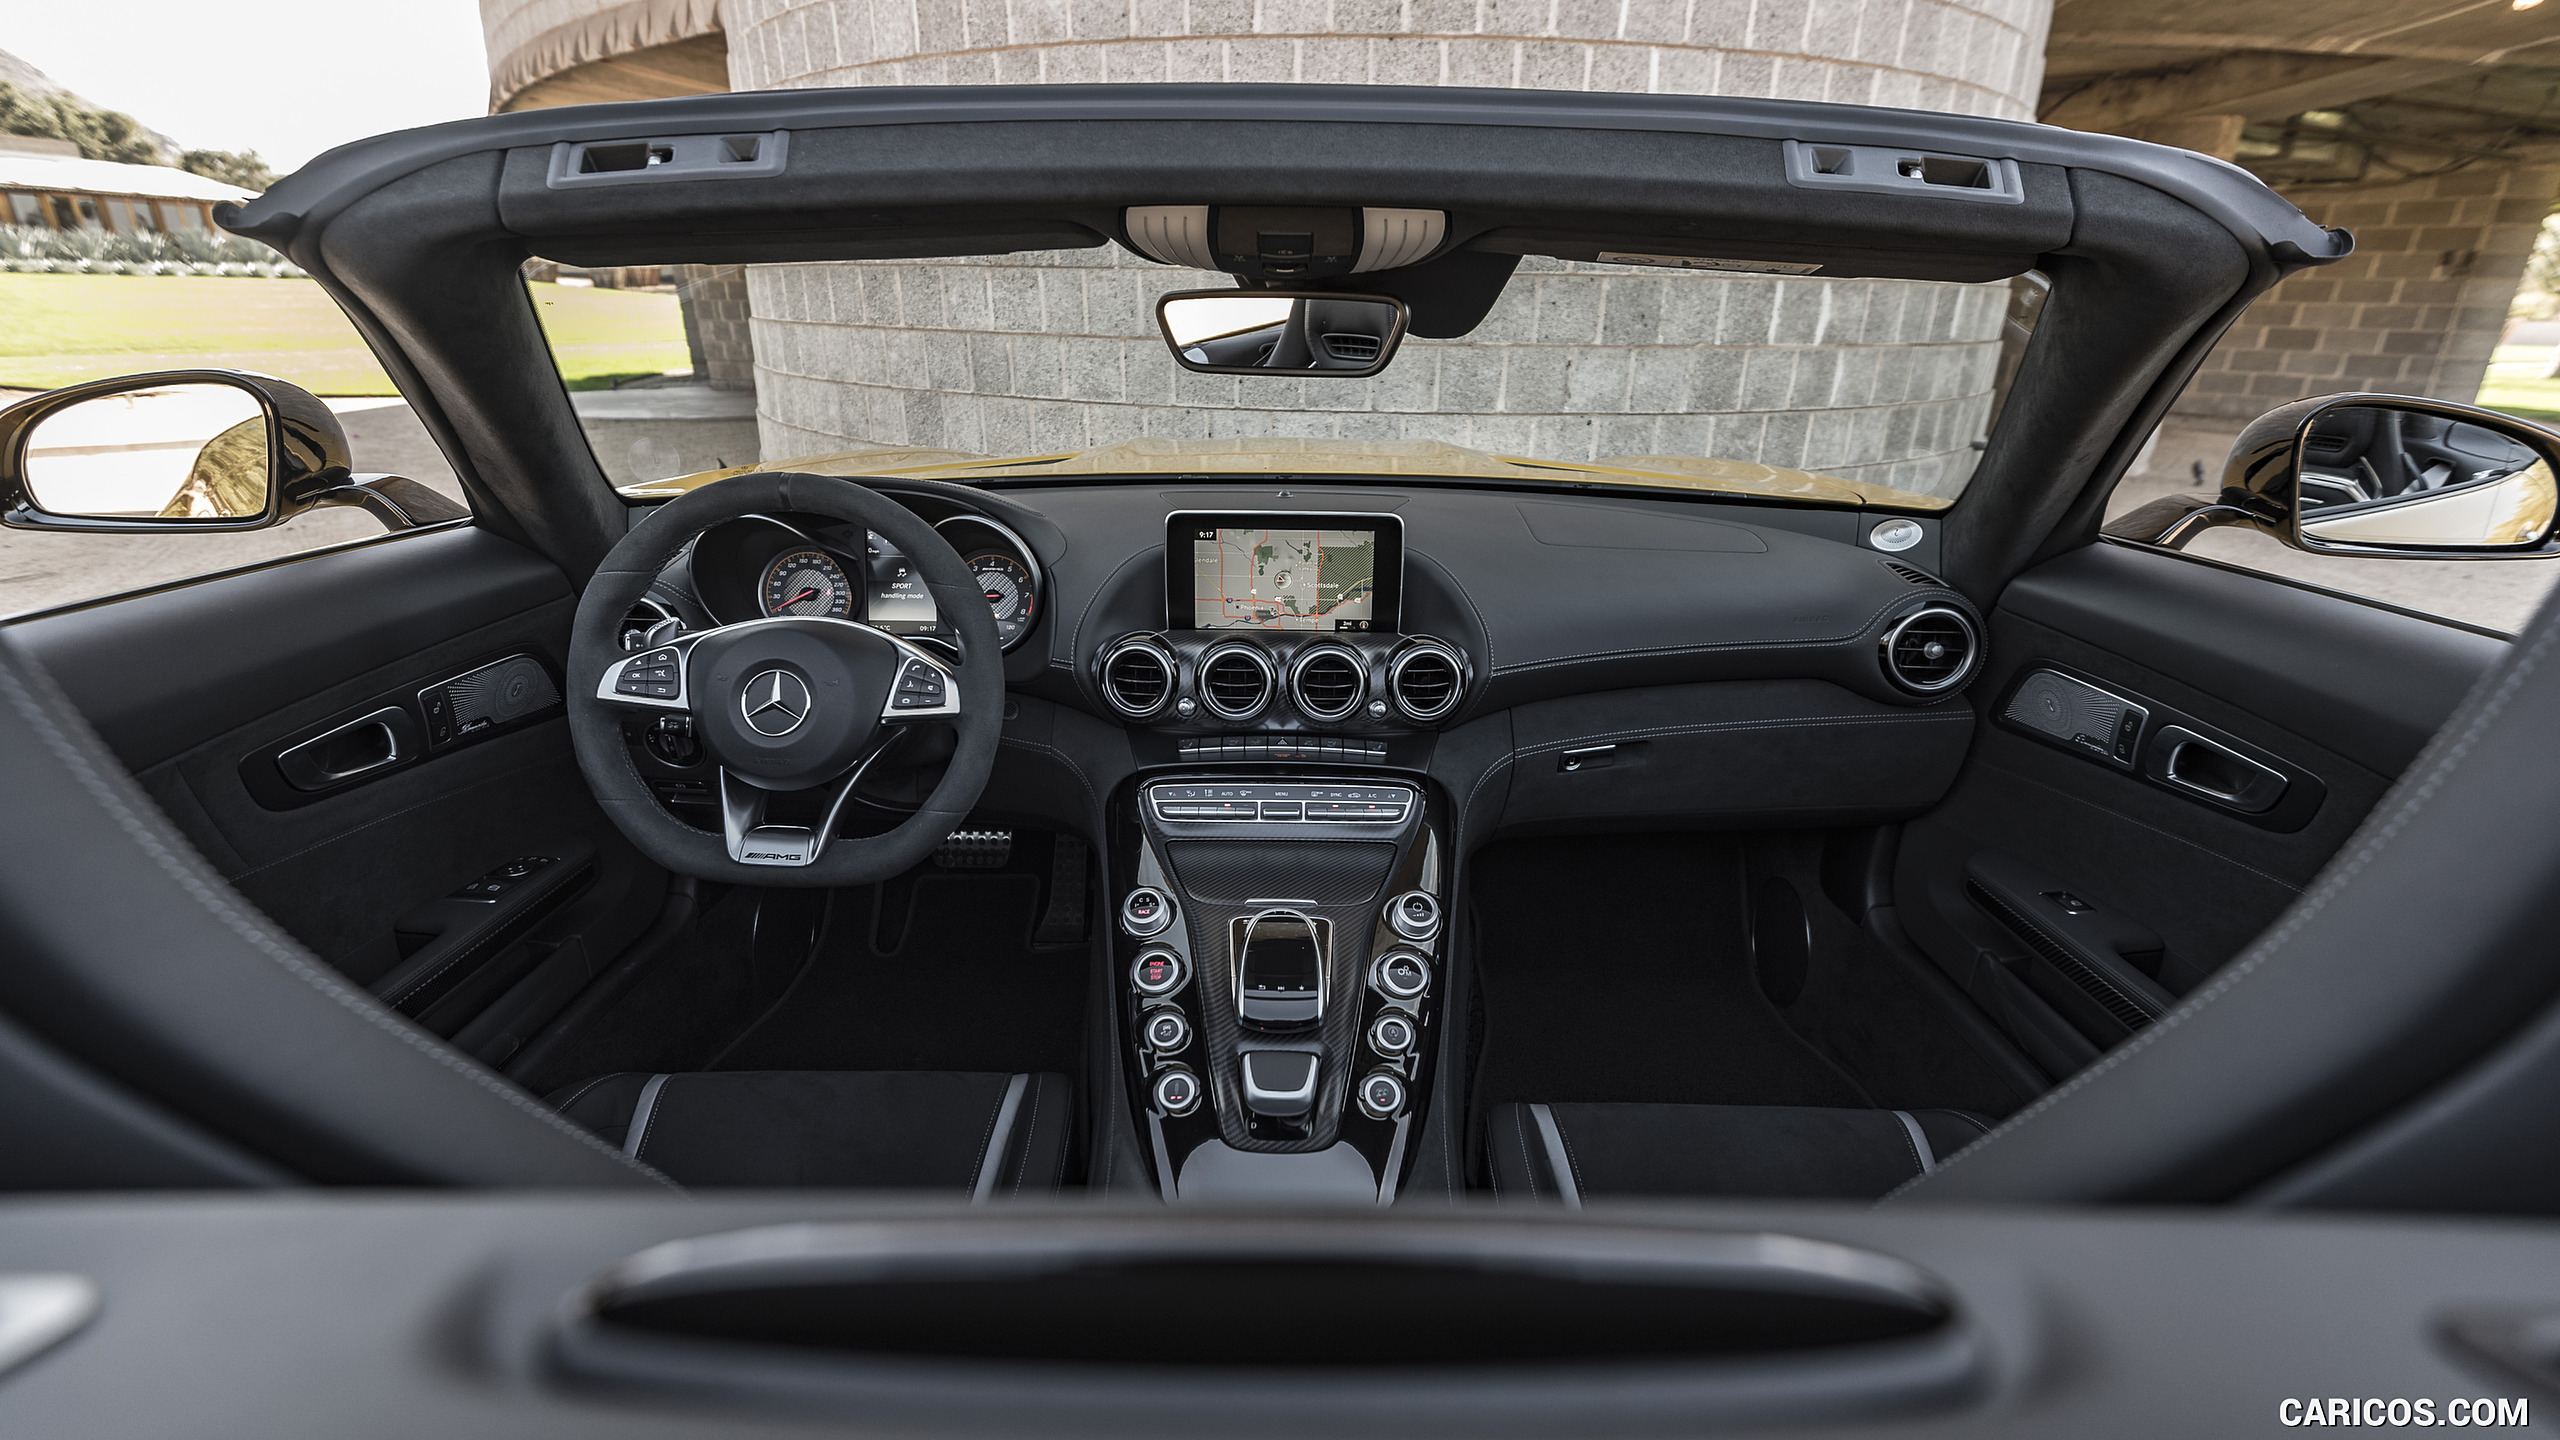 2018 Mercedes-AMG GT C Roadster - Interior, Cockpit, #284 of 350